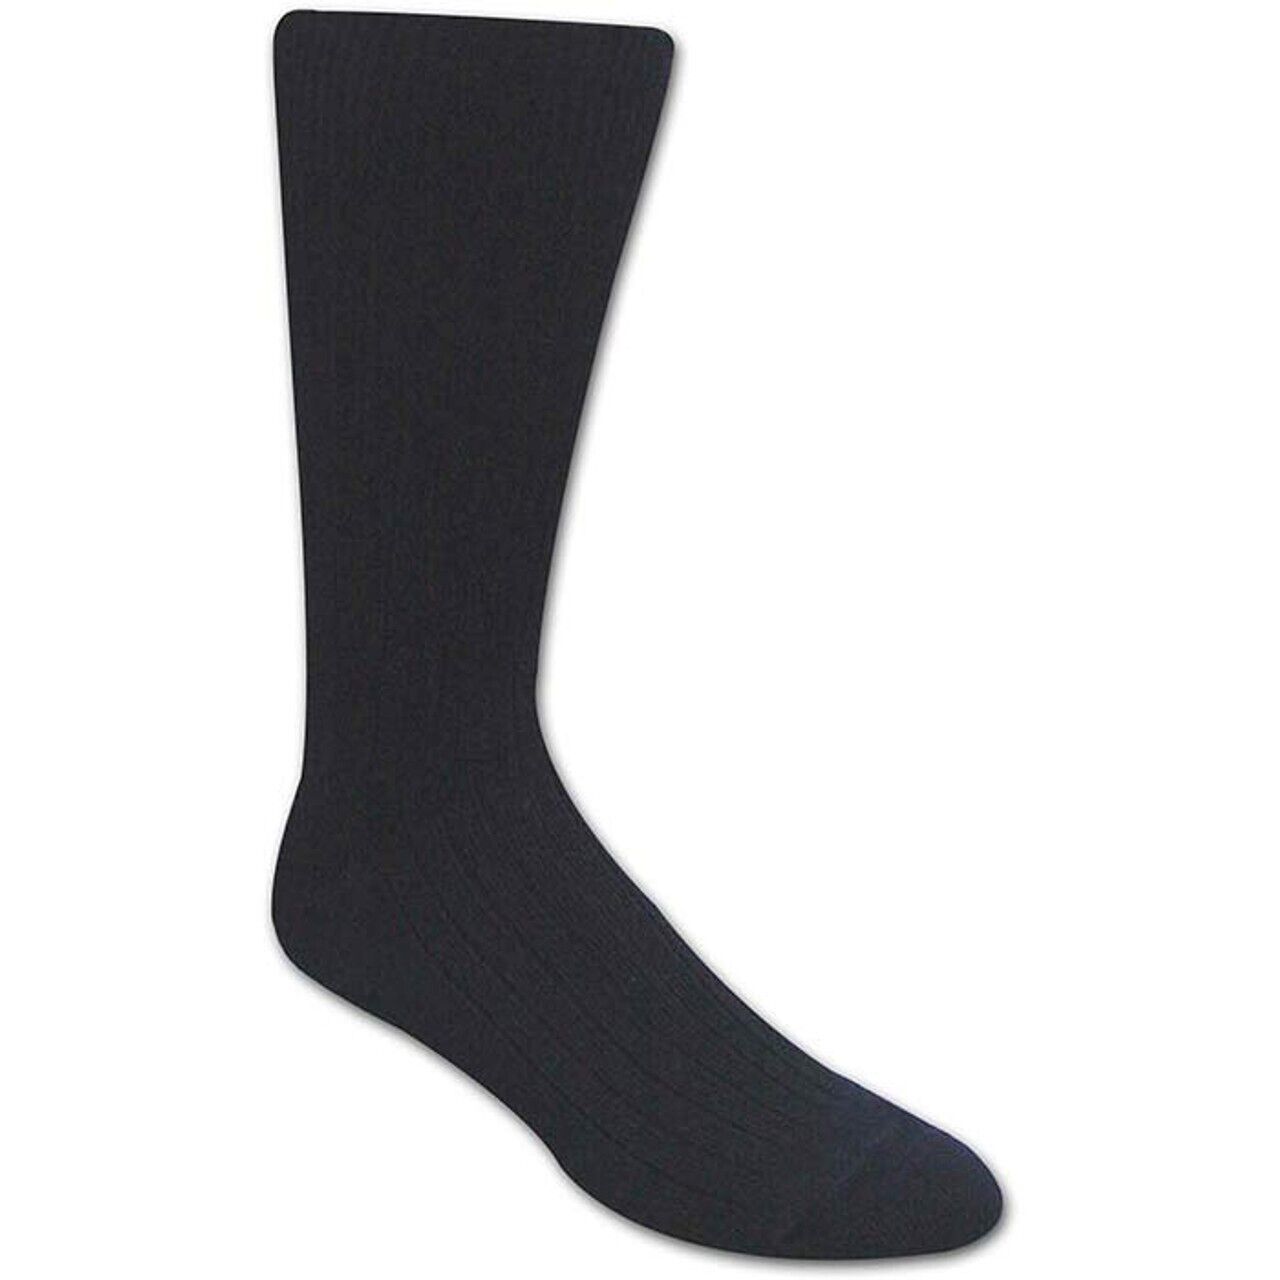 Covert Threads Dress Garrison Socks #7454 Men's Black Made in USA